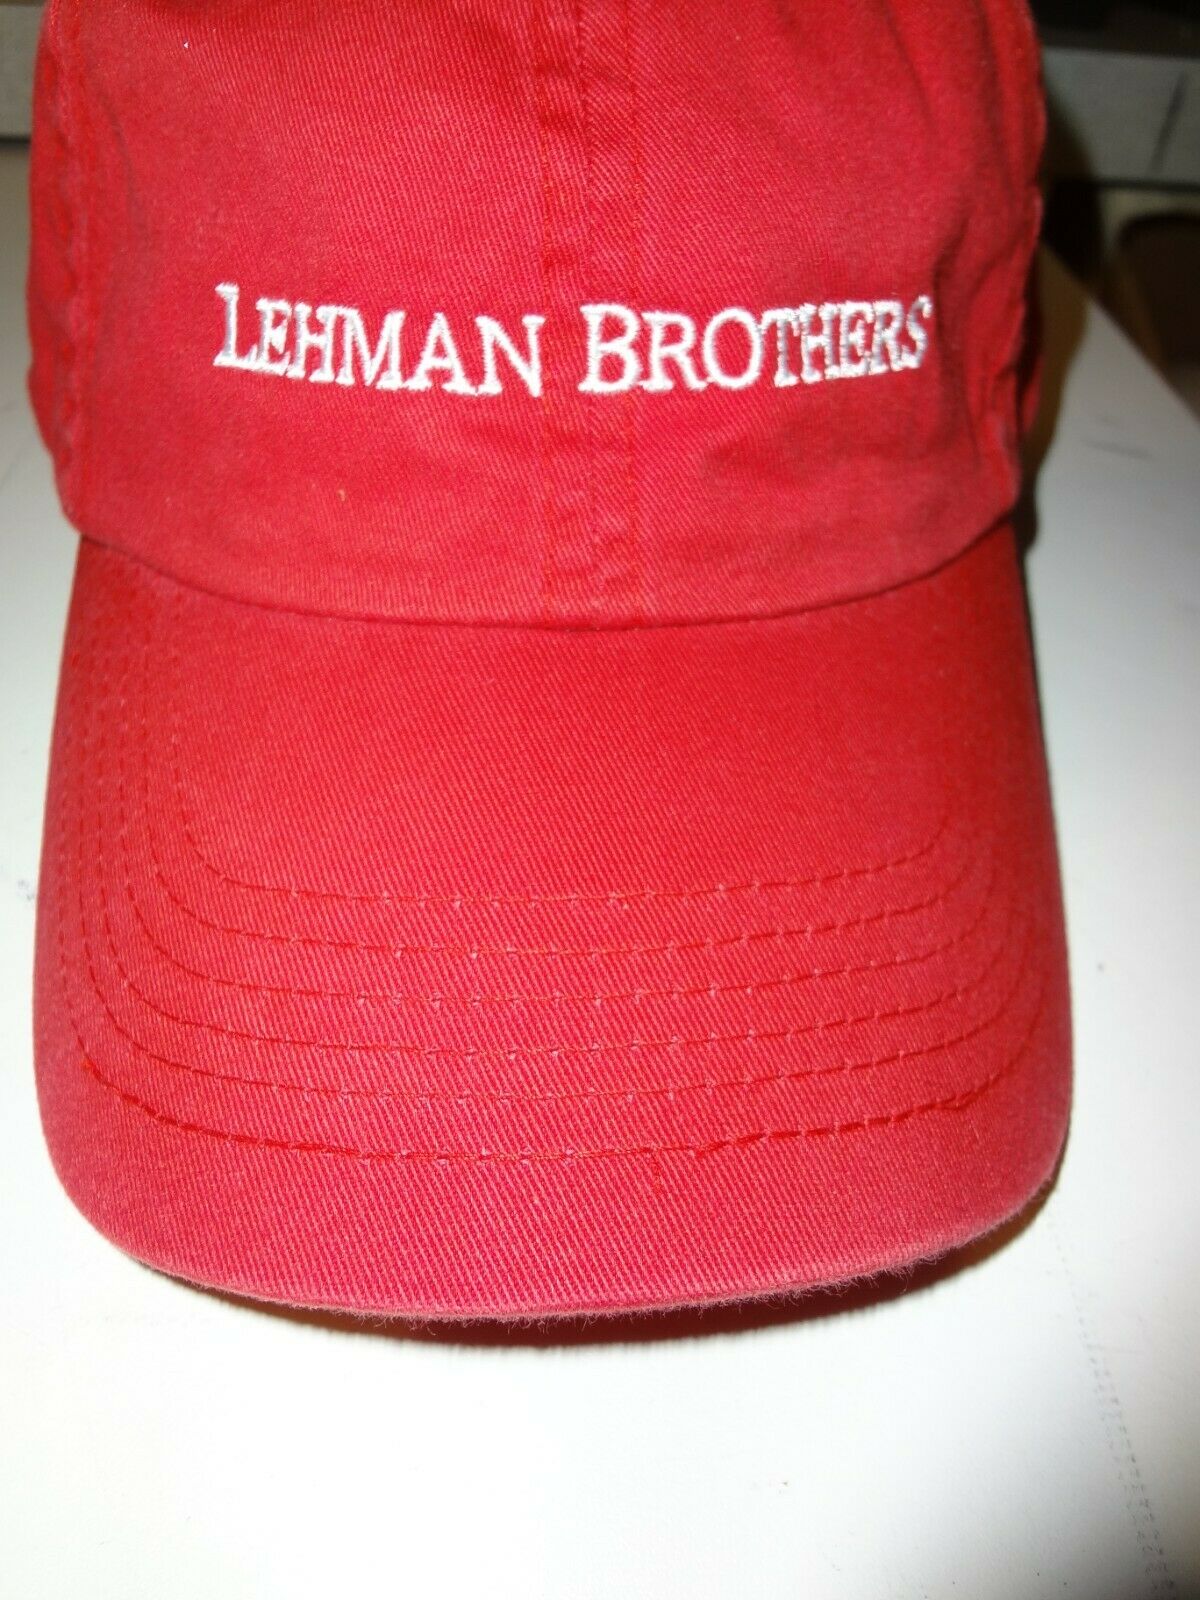 Lehman Brothers ~ Sports Cap ~ Vintage Look ~ Bogo Offer - (see Details Below)